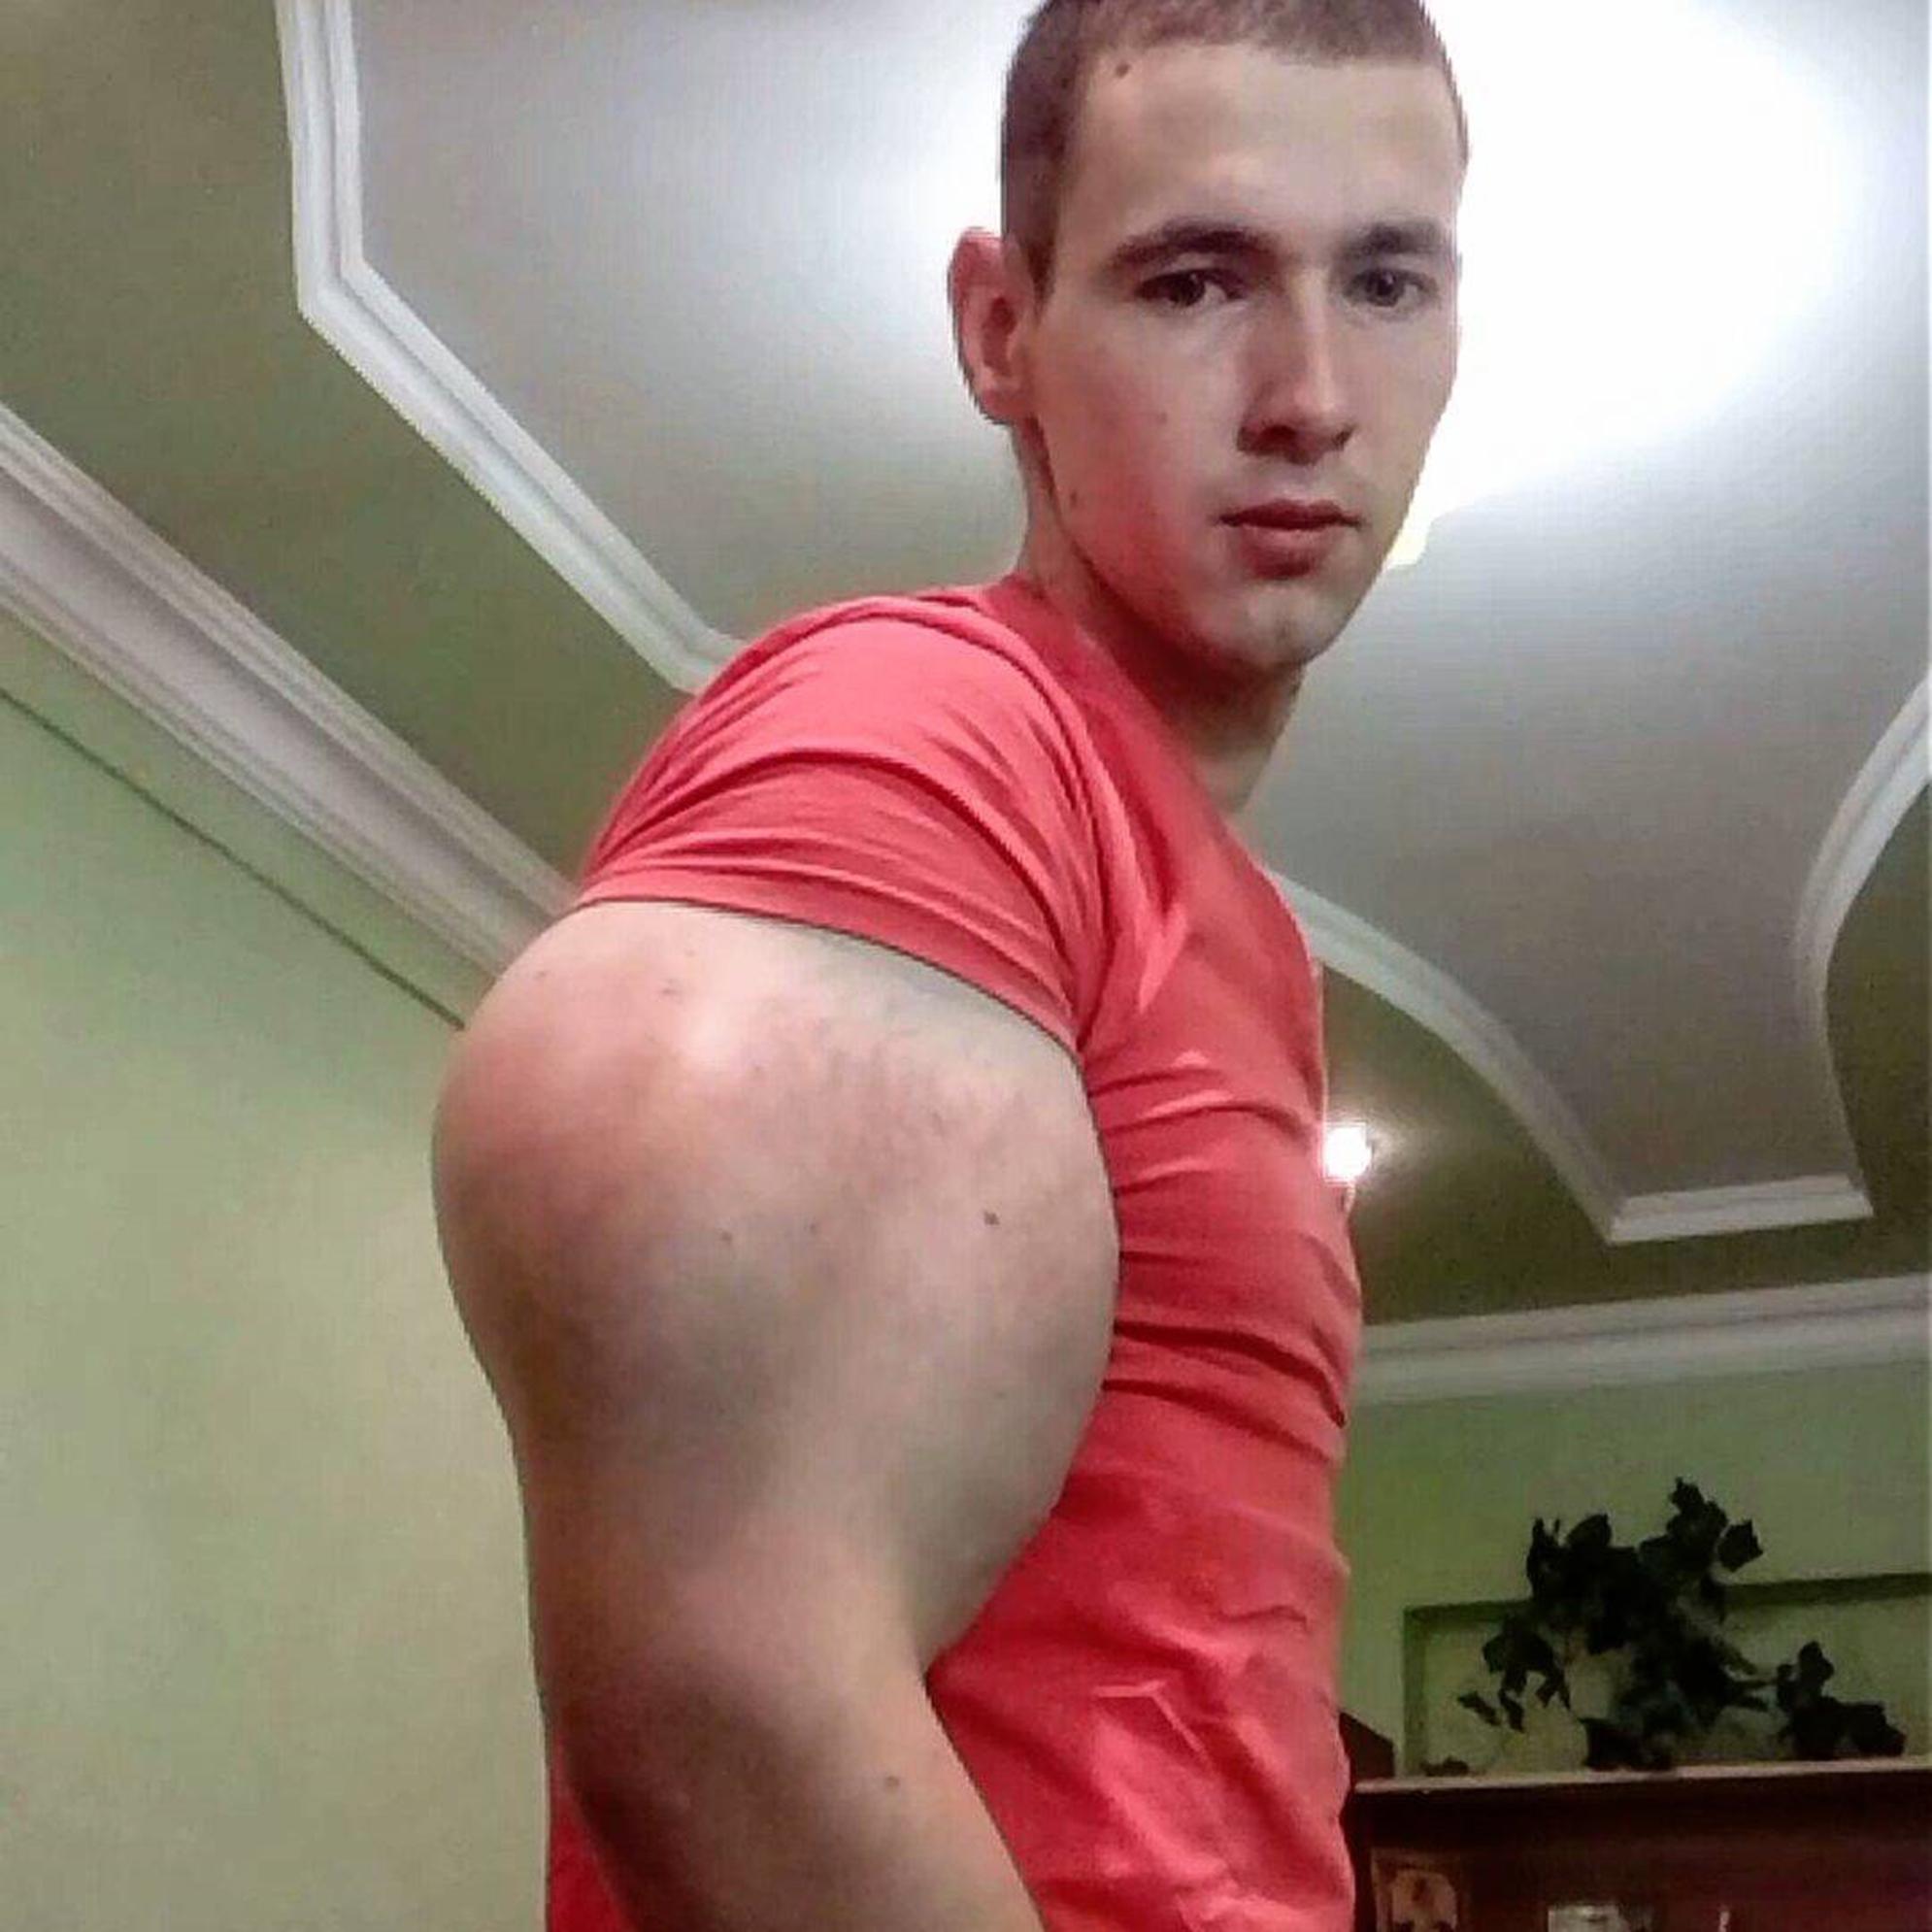 Кирилл делится снимками своих мускулистых мышц в социальных сетях